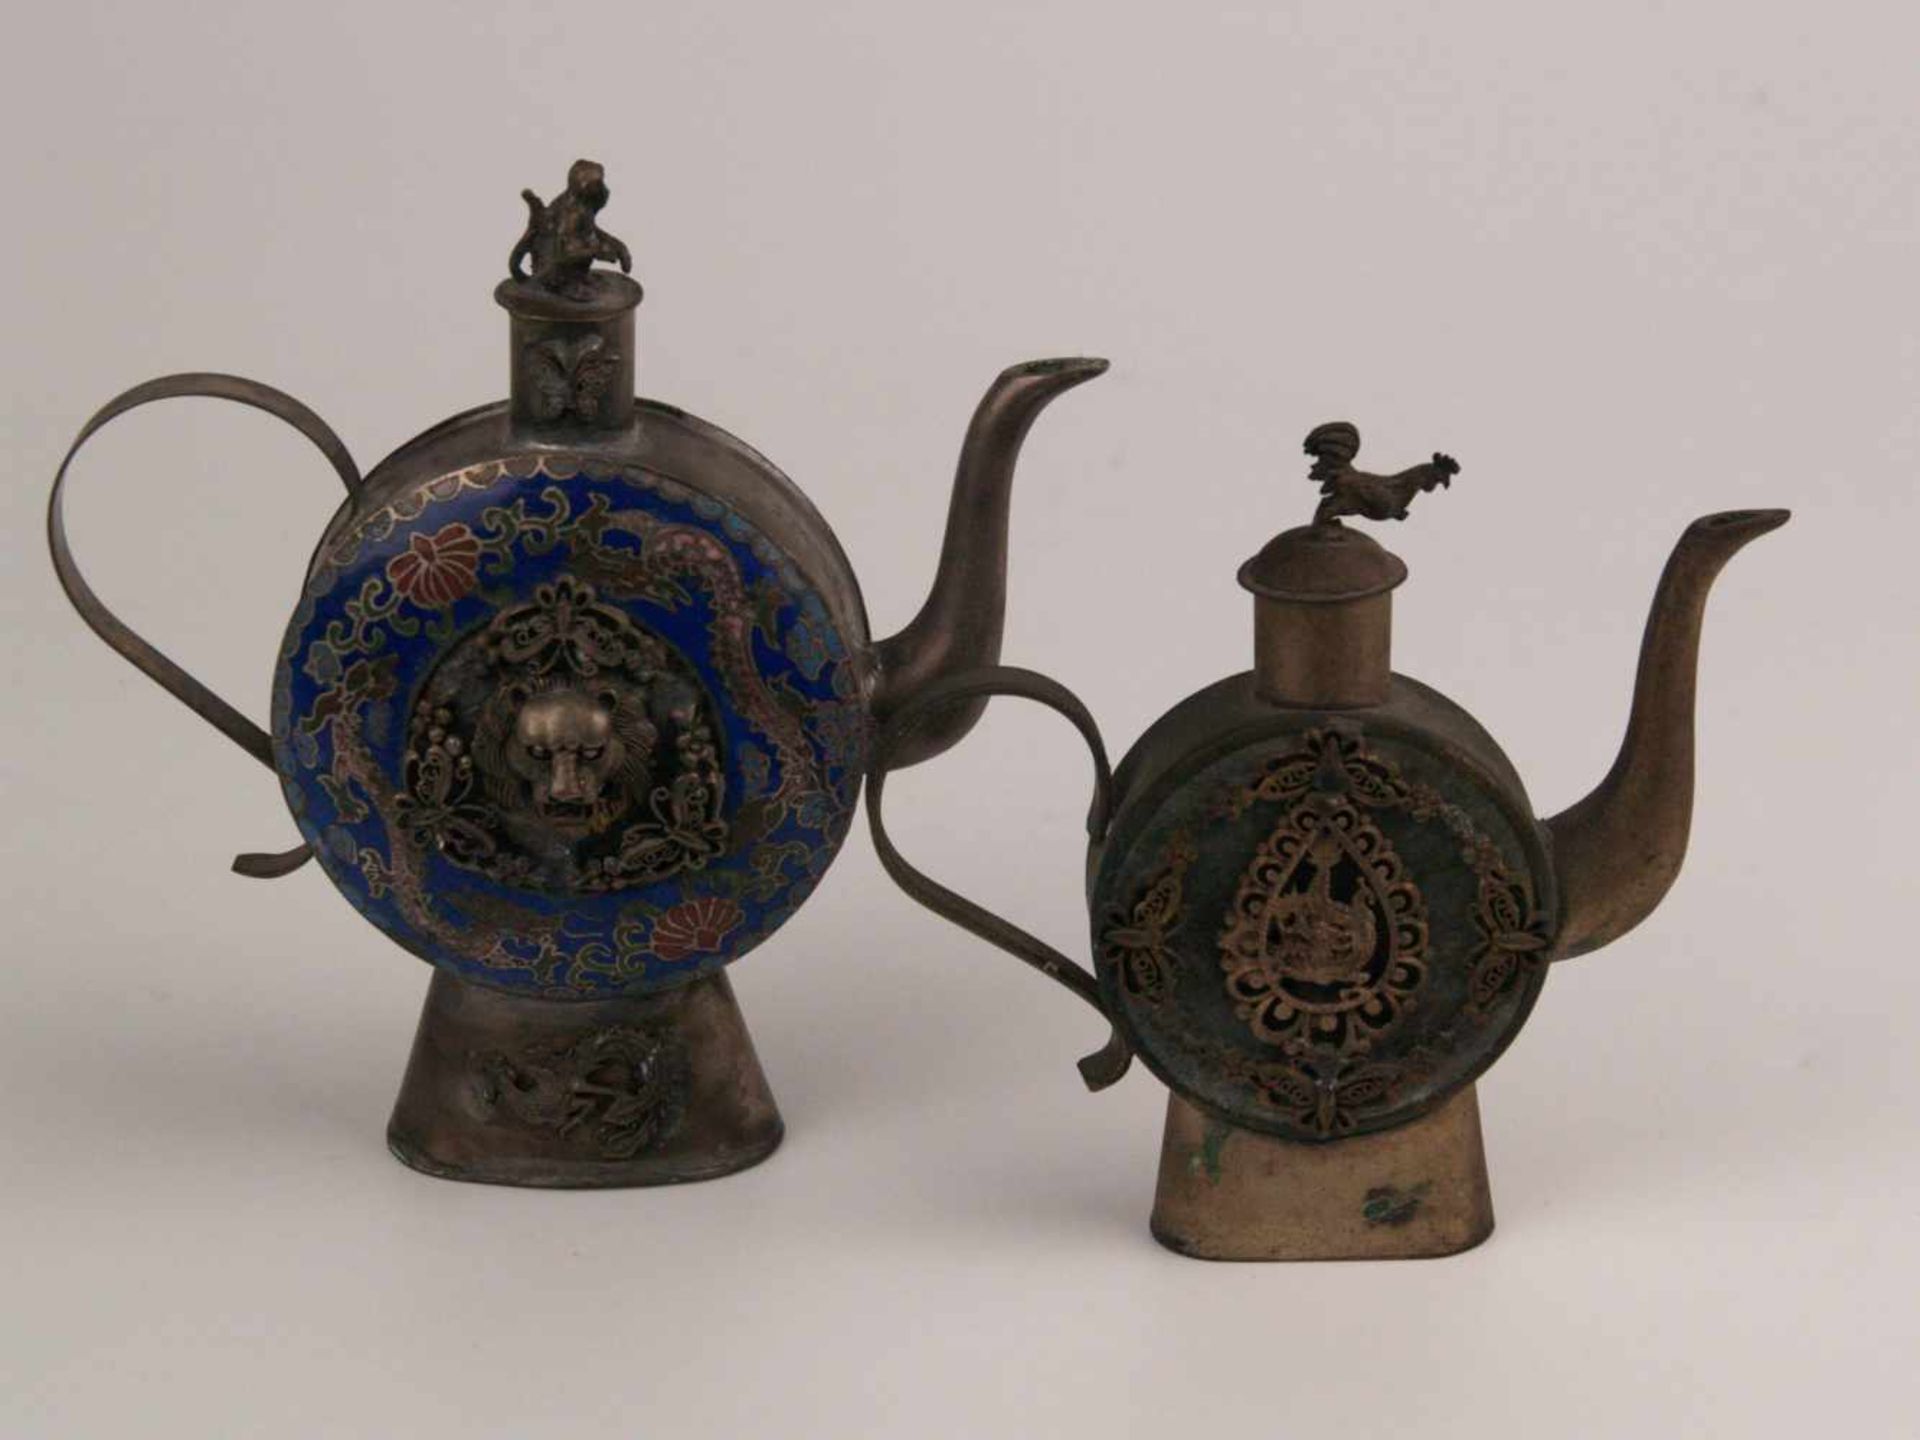 Zwei filigrane Metallkännchen - China, jeweils runder abgeflachter Korpus auf hohem Standfuß und - Bild 2 aus 6